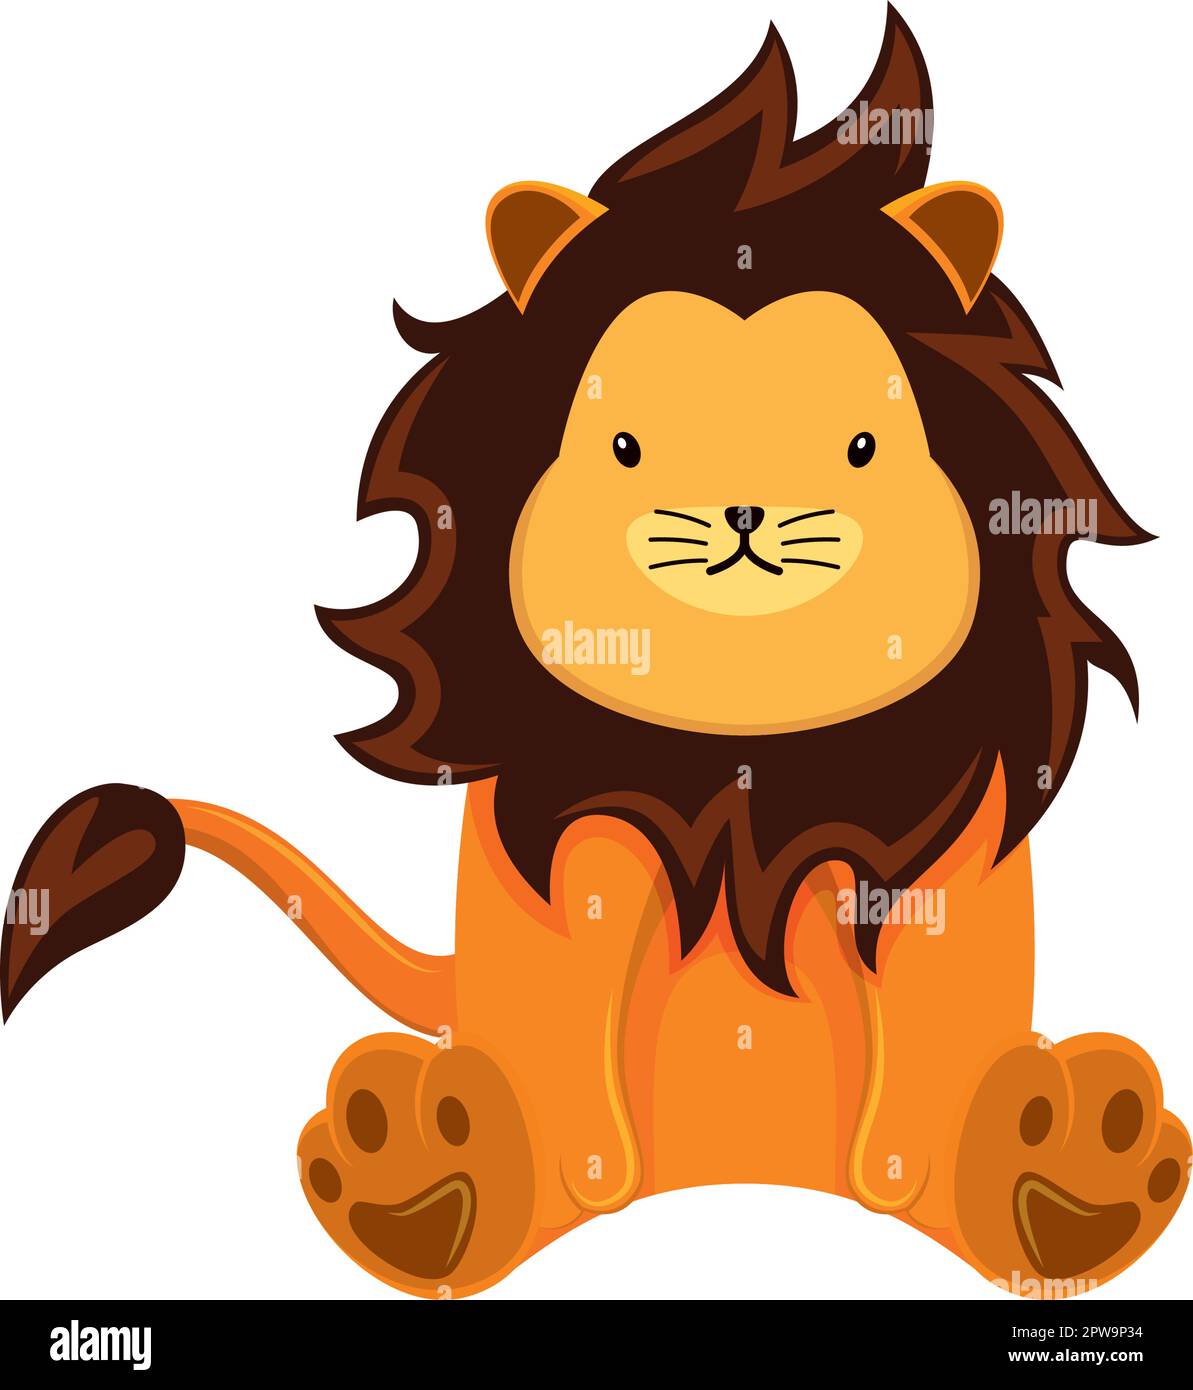 Illustration adorable et adorable à motif lion avec dessin animé Illustration de Vecteur